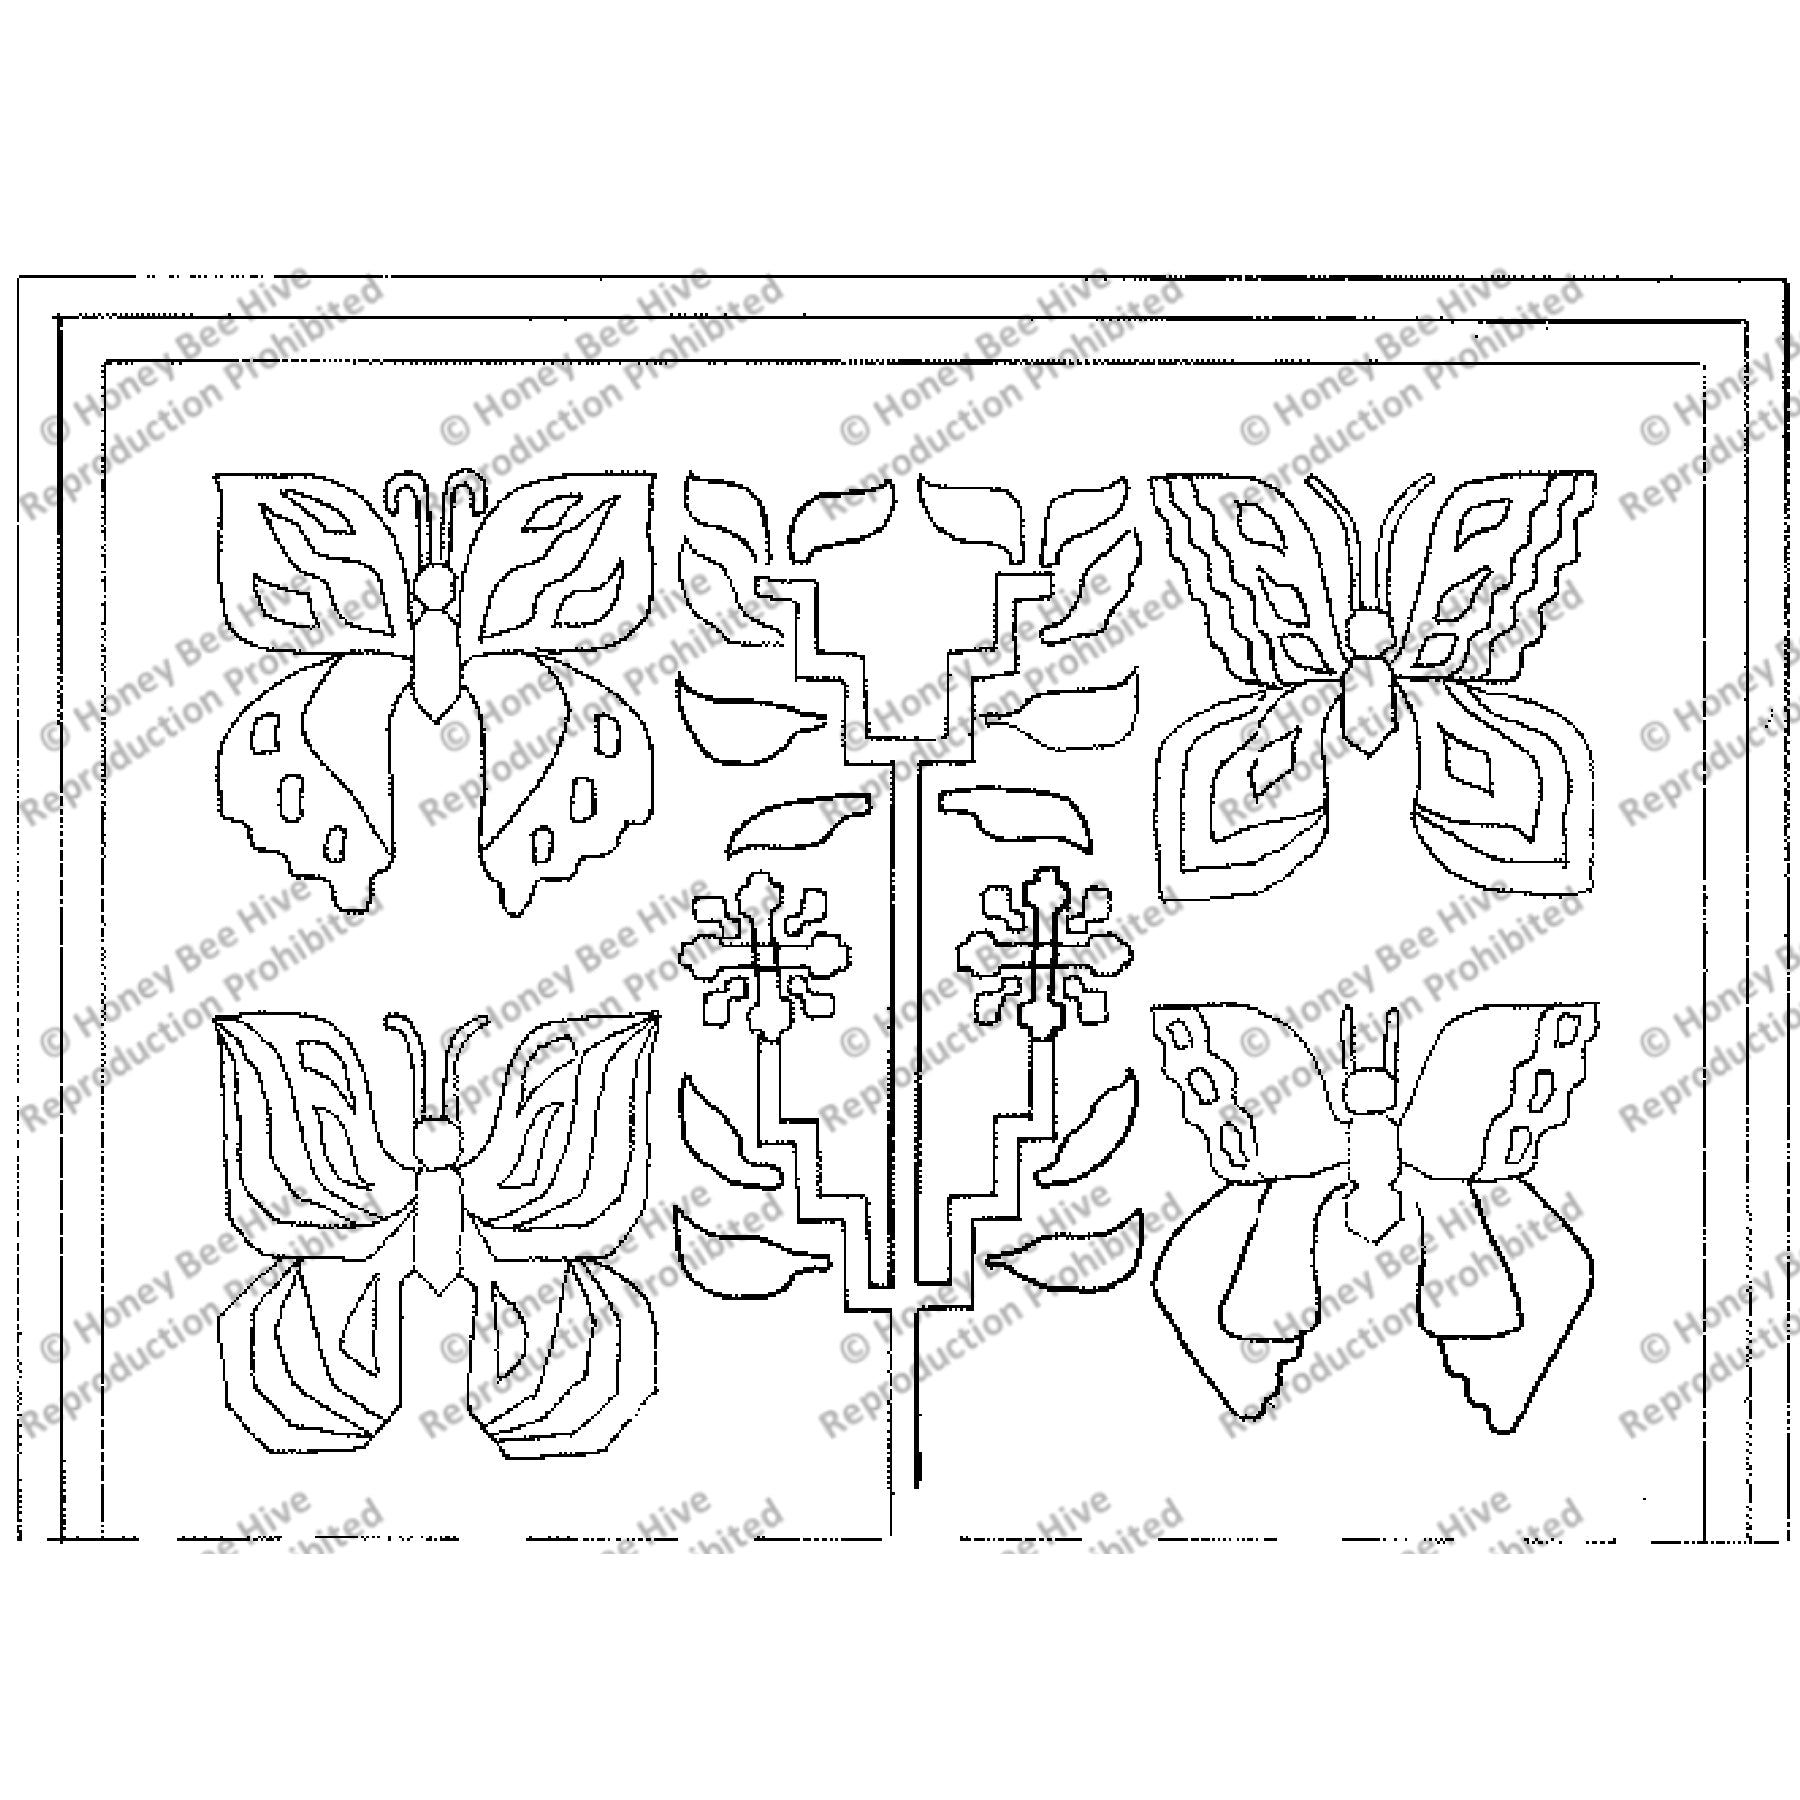 Flutter-By Fantasy, rug hooking pattern